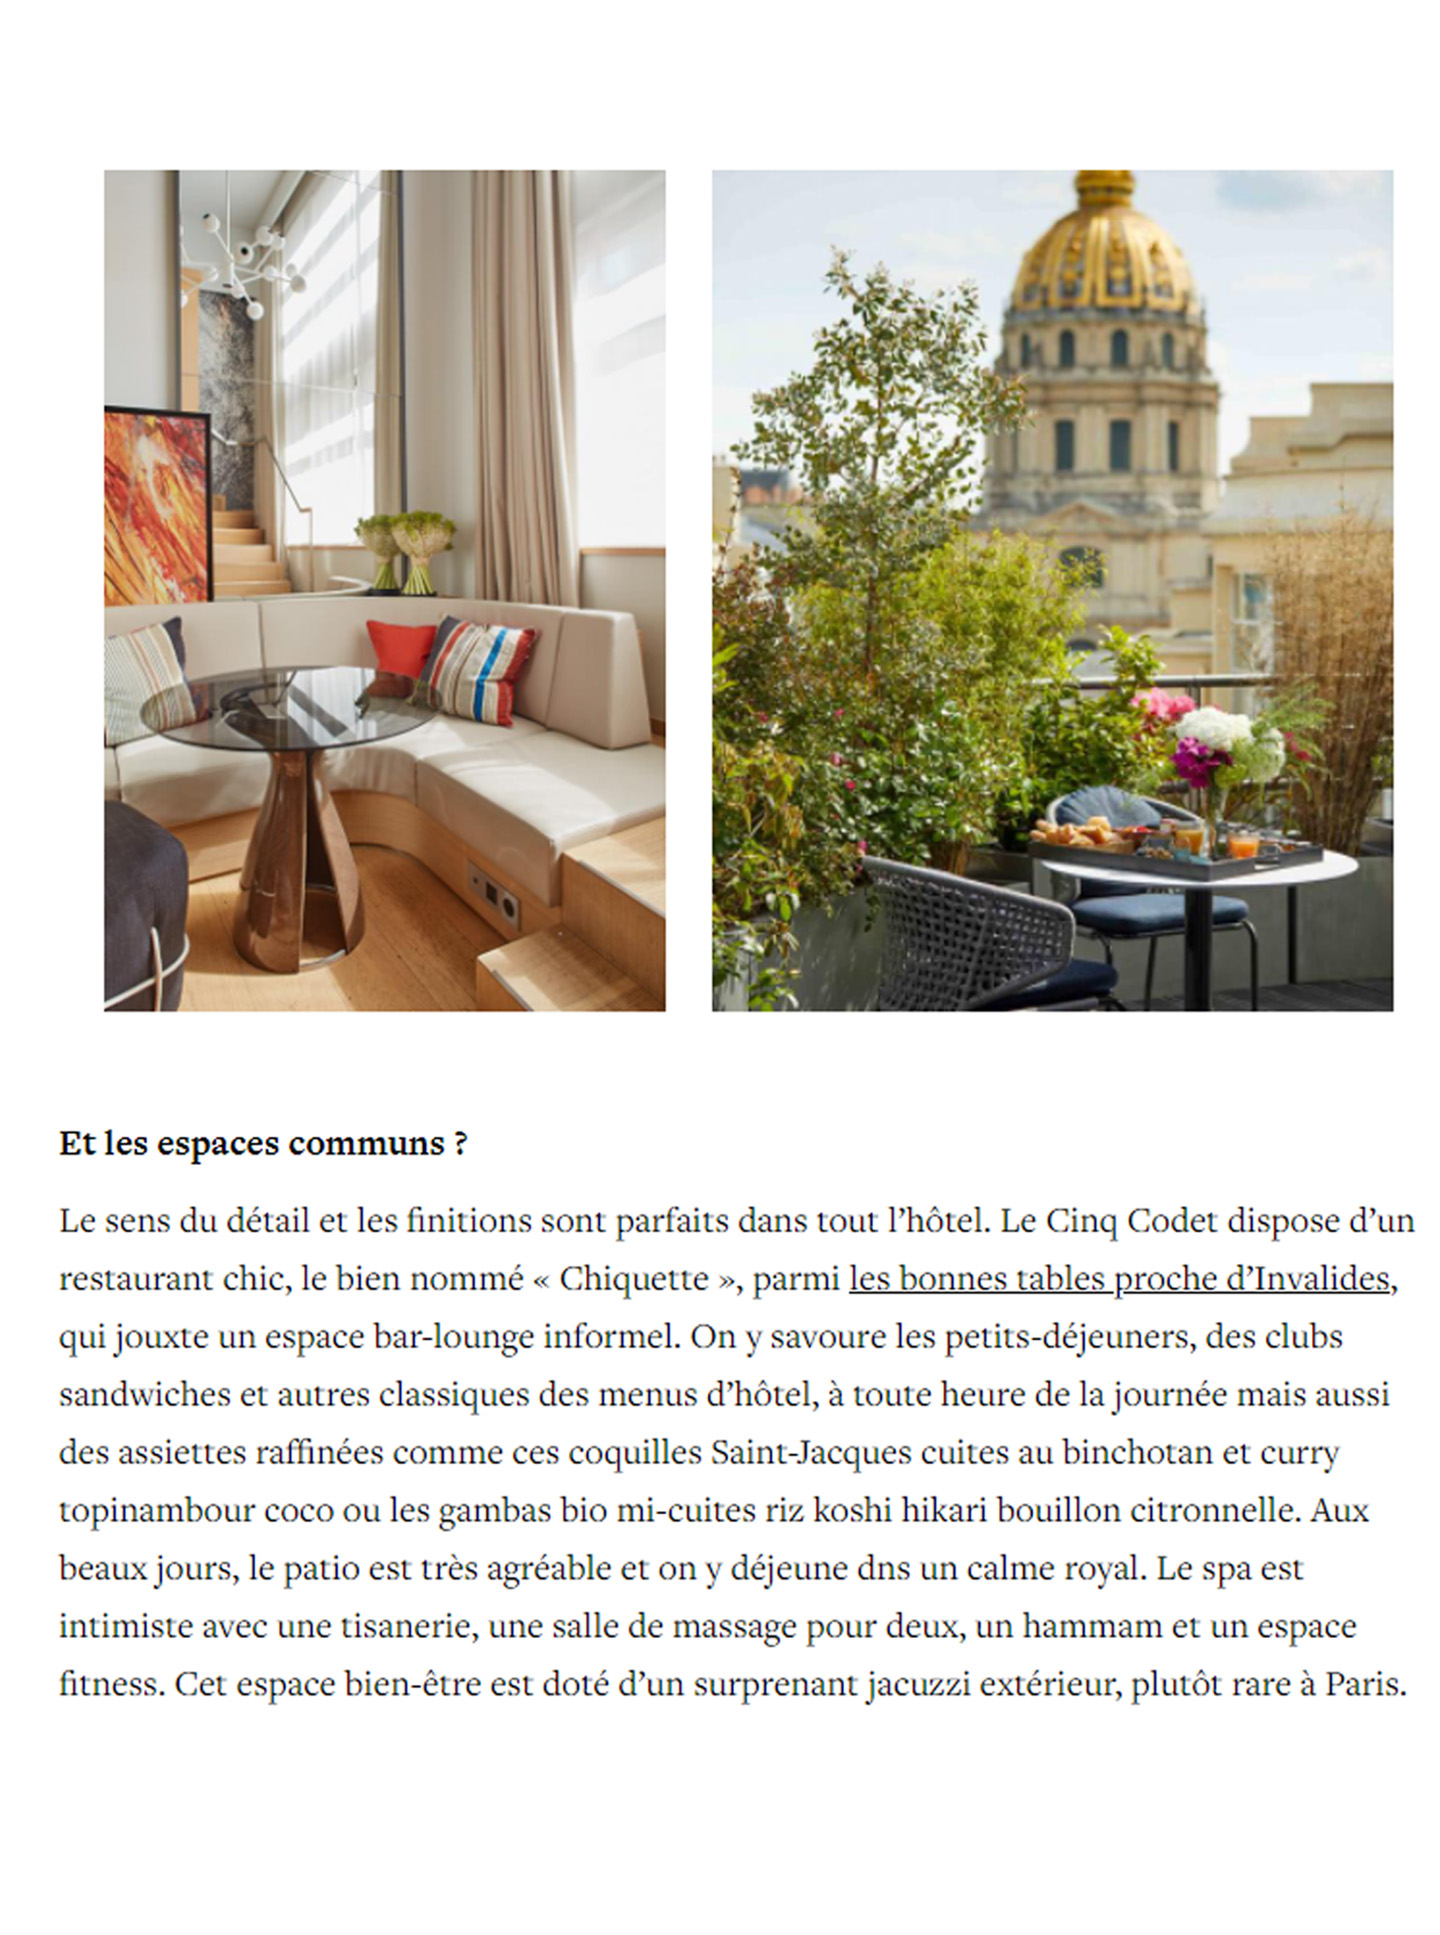 article sur l'hotel le cinq codet dans le magazine yonder, hotel de luxe décoré par le studio jean-philippe nuel, architecture d'intérieur, hotel parisien 5 étoiles